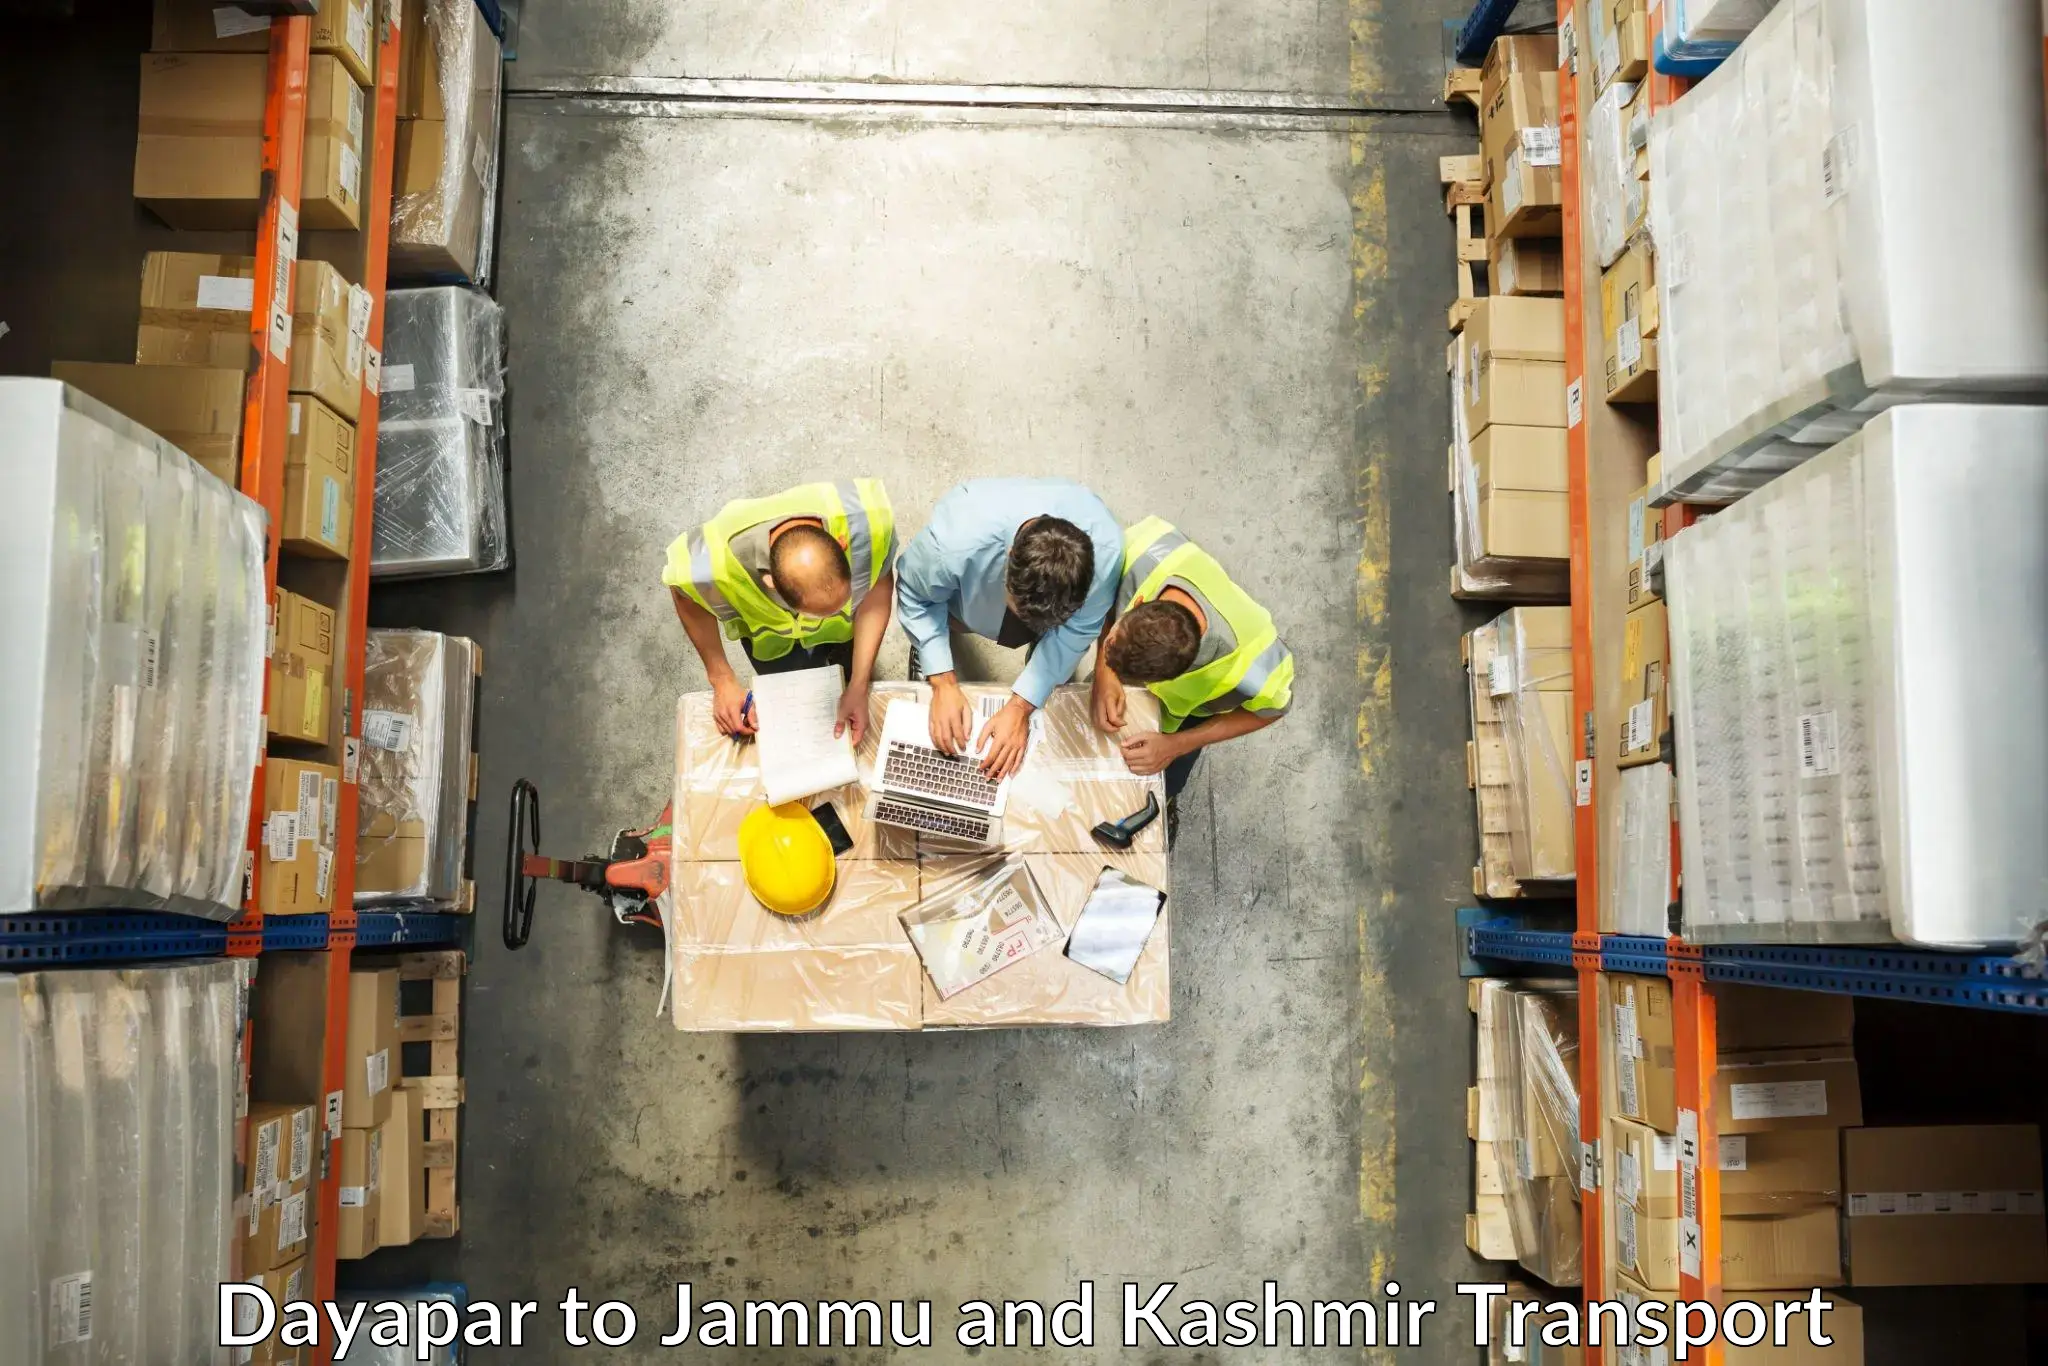 Shipping partner Dayapar to Jammu and Kashmir